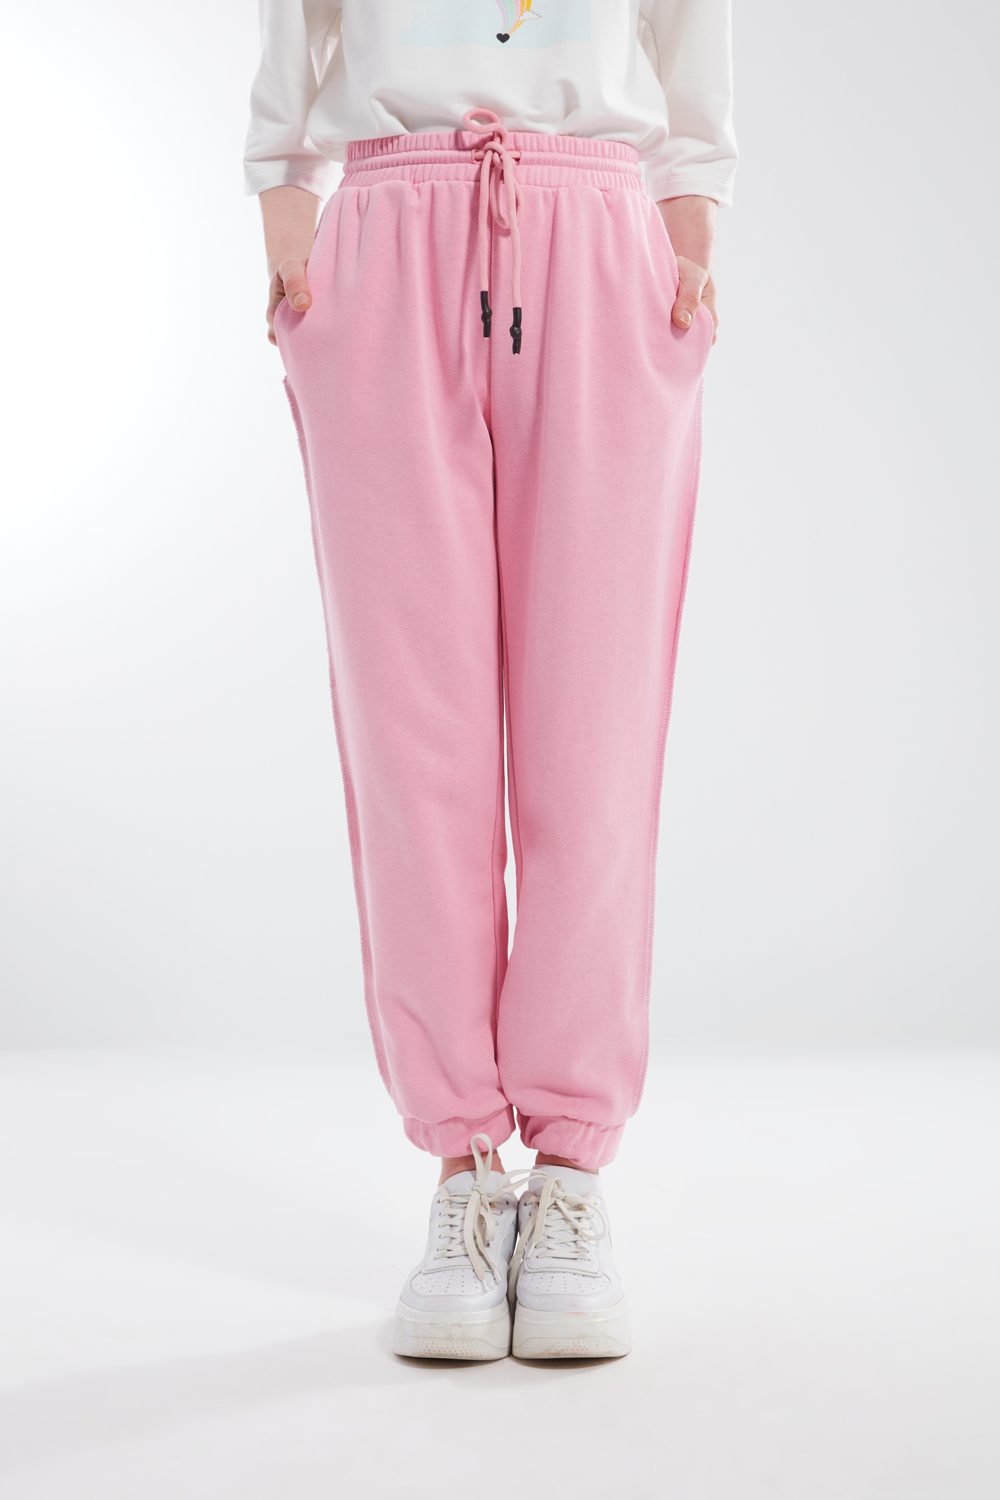 Comfy Stitched Pink Sweatpants